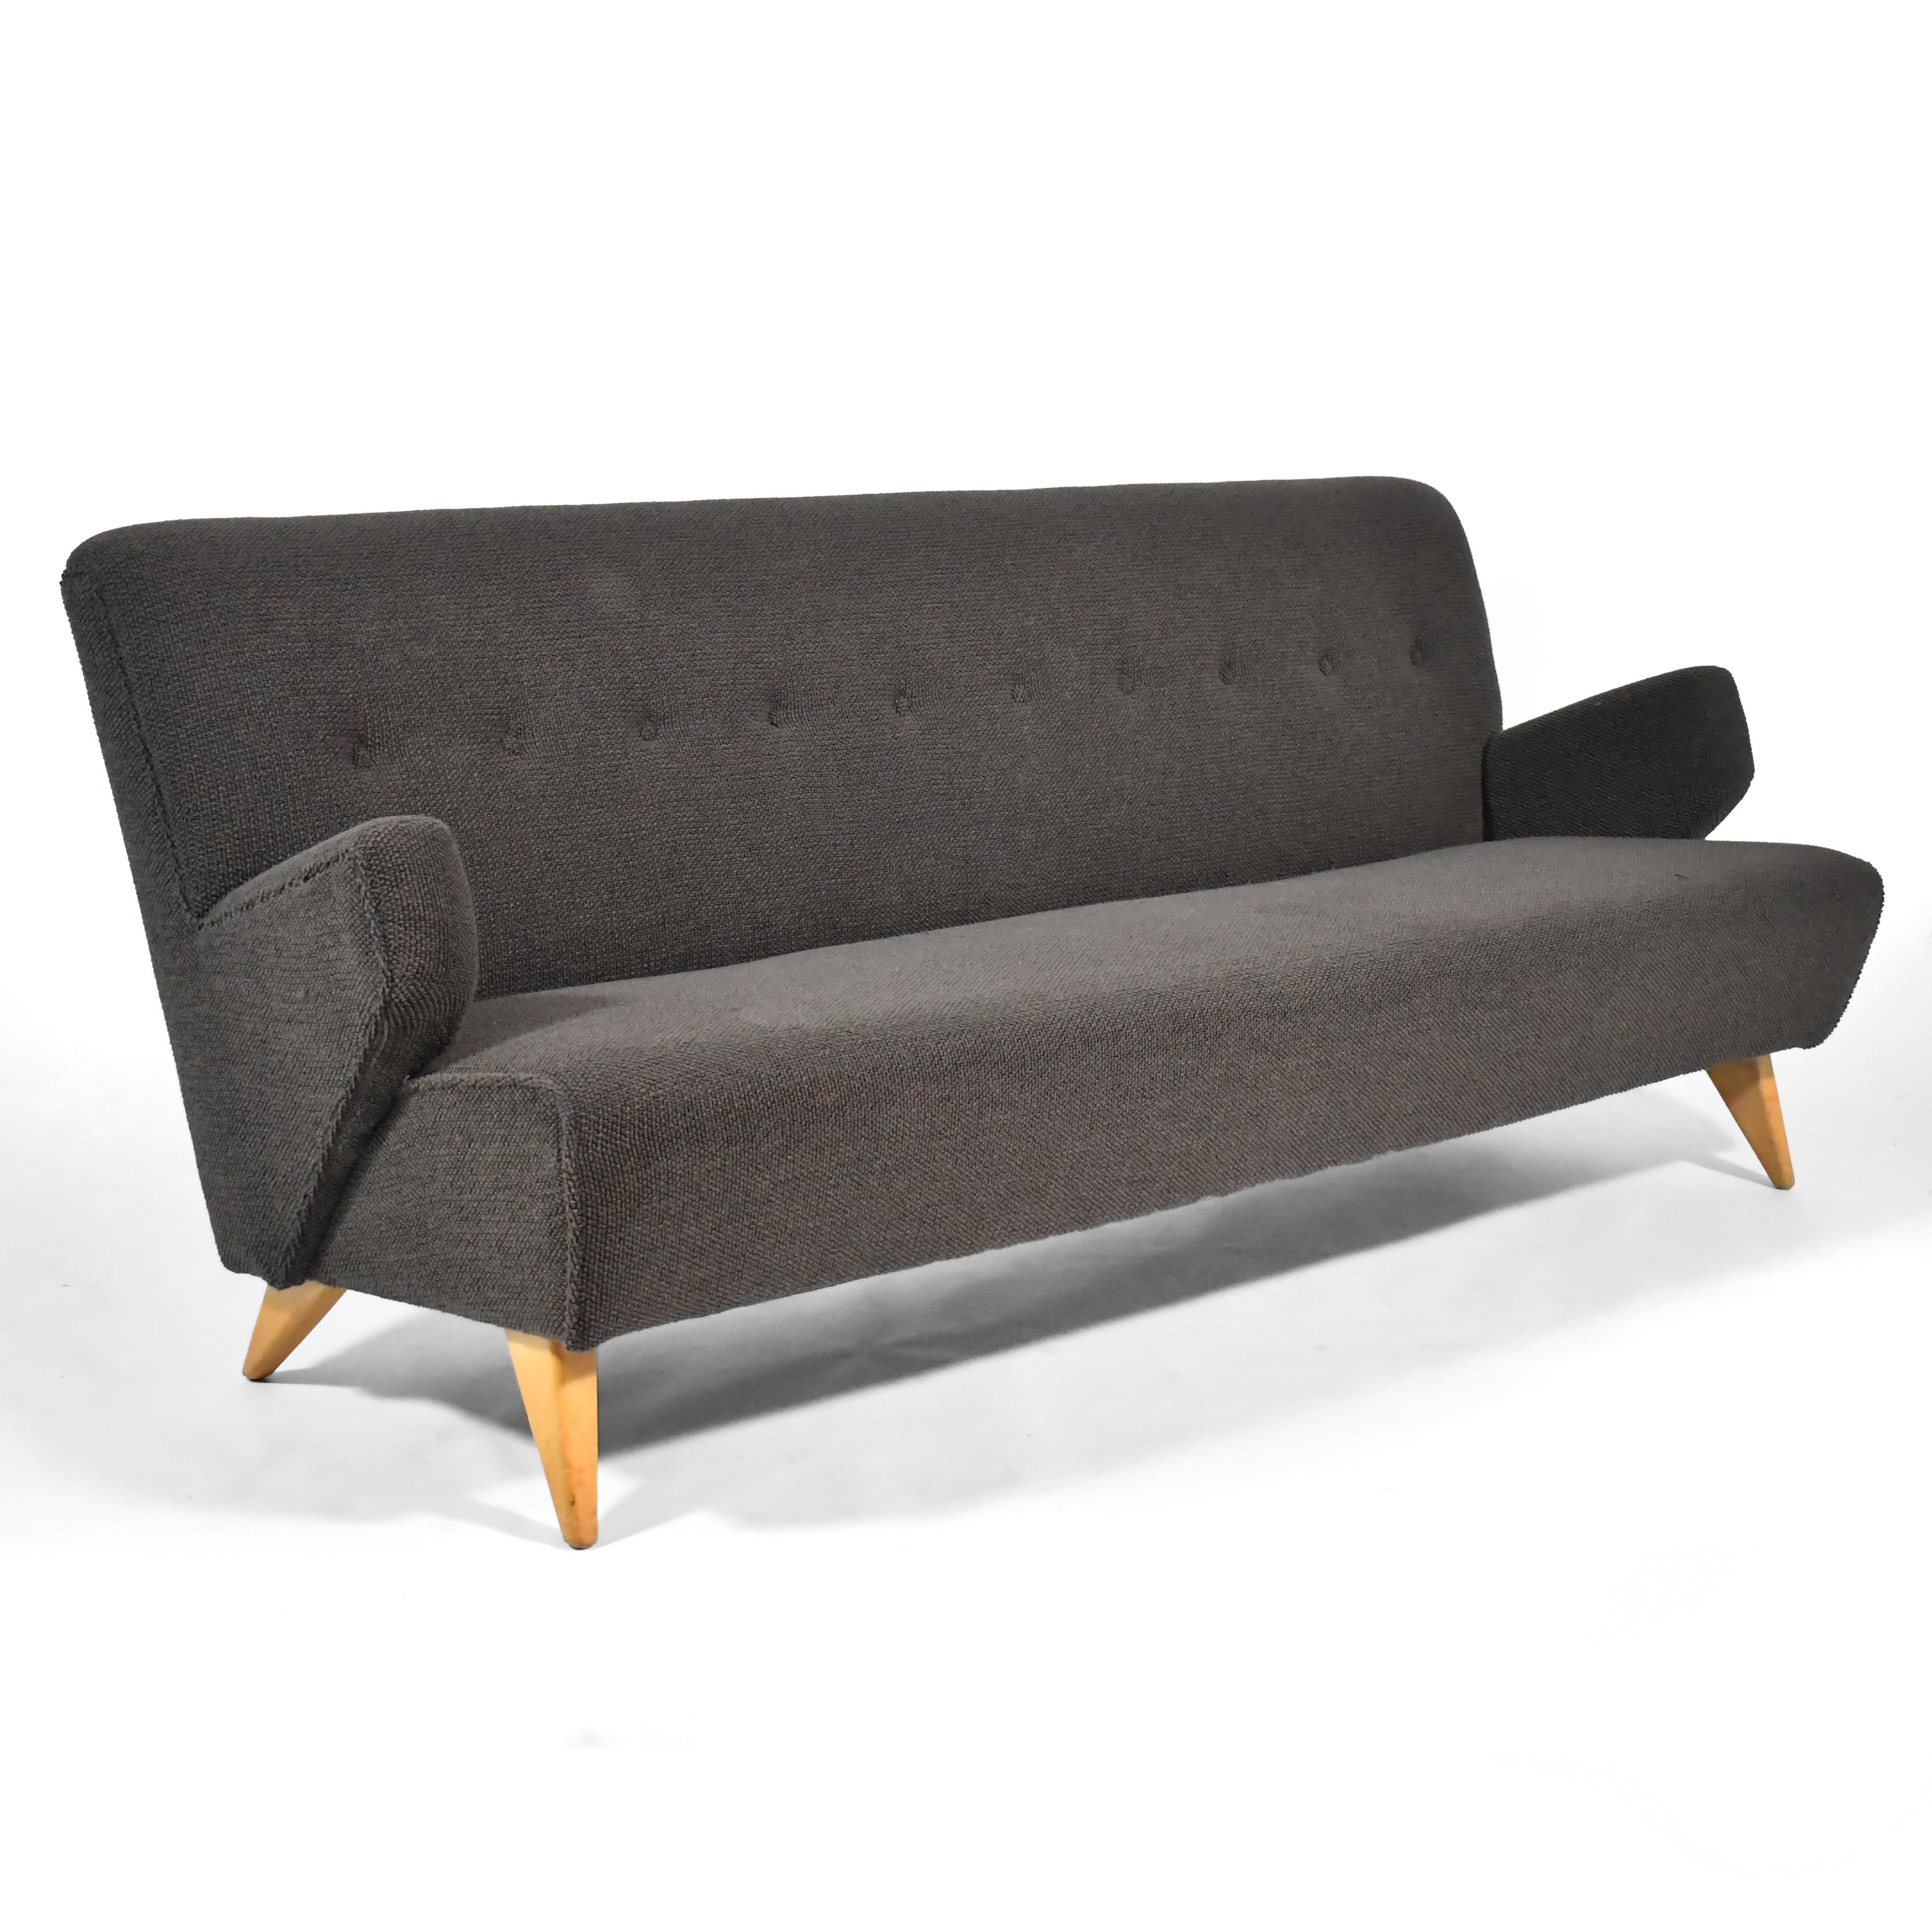 Dieses frühe Sofa Modell 37 von Risom für Knoll ist ein Klassiker aus der Mitte des Jahrhunderts. Die dynamische, aber zurückhaltende Form, die 1946 entworfen wurde, verweist auf das skandinavische Erbe von Risom. Der gepolsterte Korpus wird von